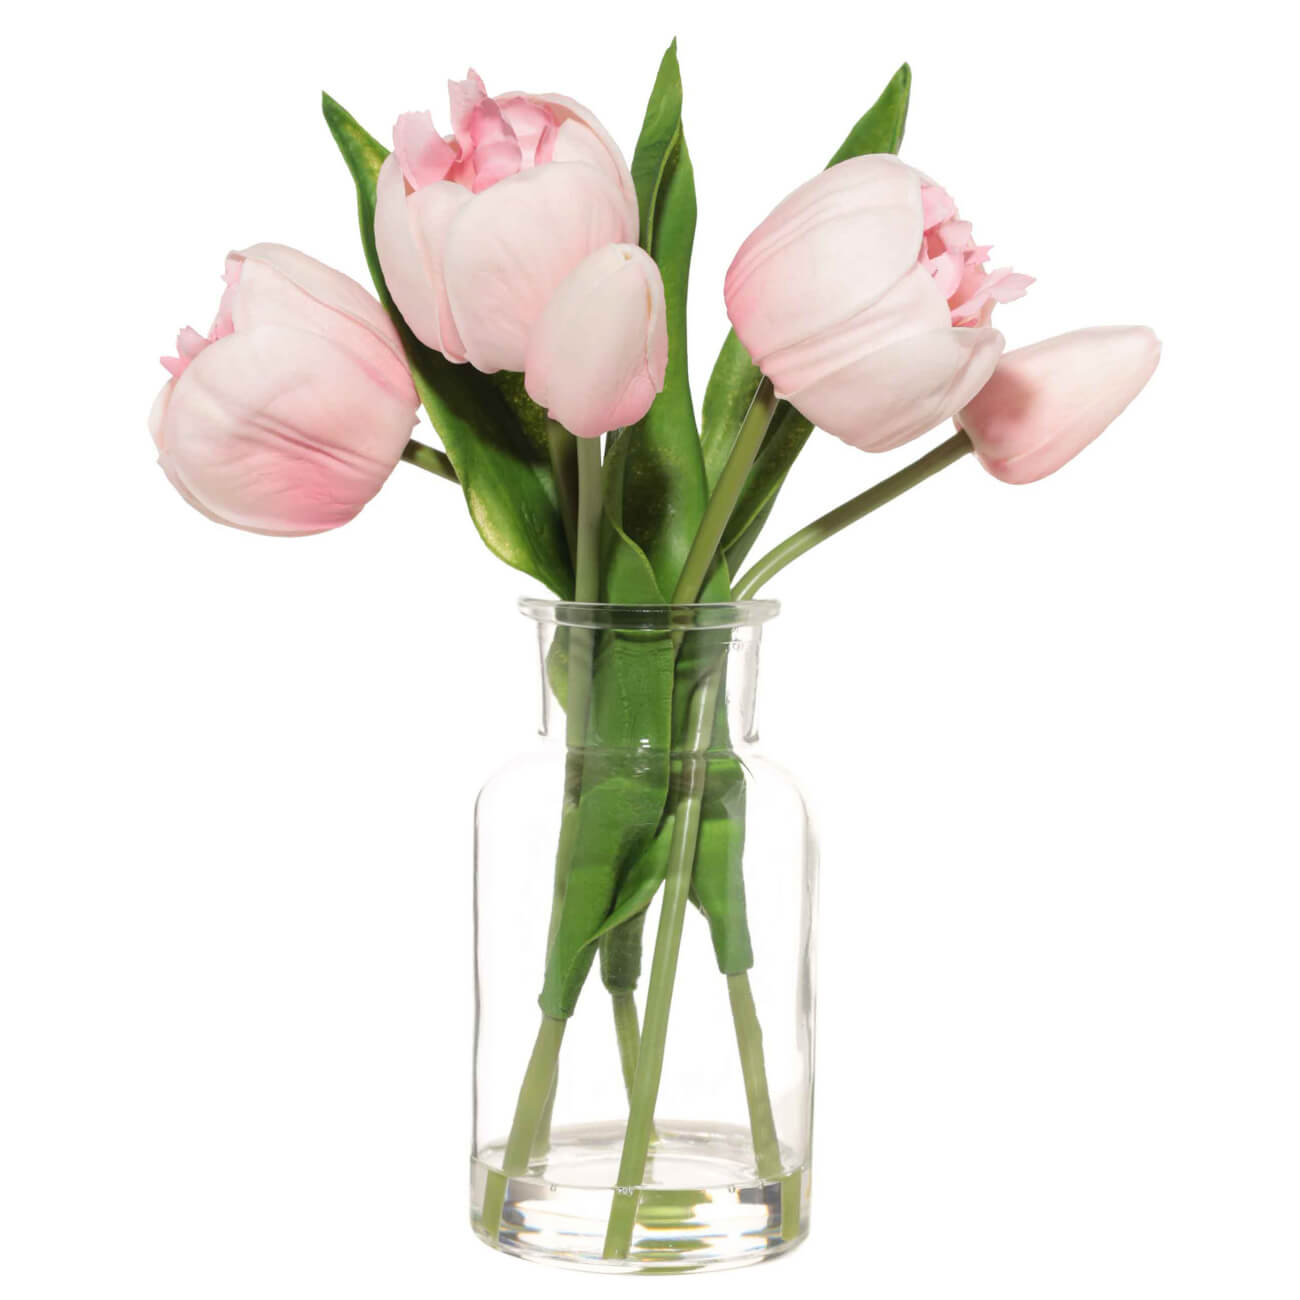 Букет искусственный, 21 см, в вазе, полиуретан/стекло, Розовые тюльпаны, Tulip garden букет мысли евы